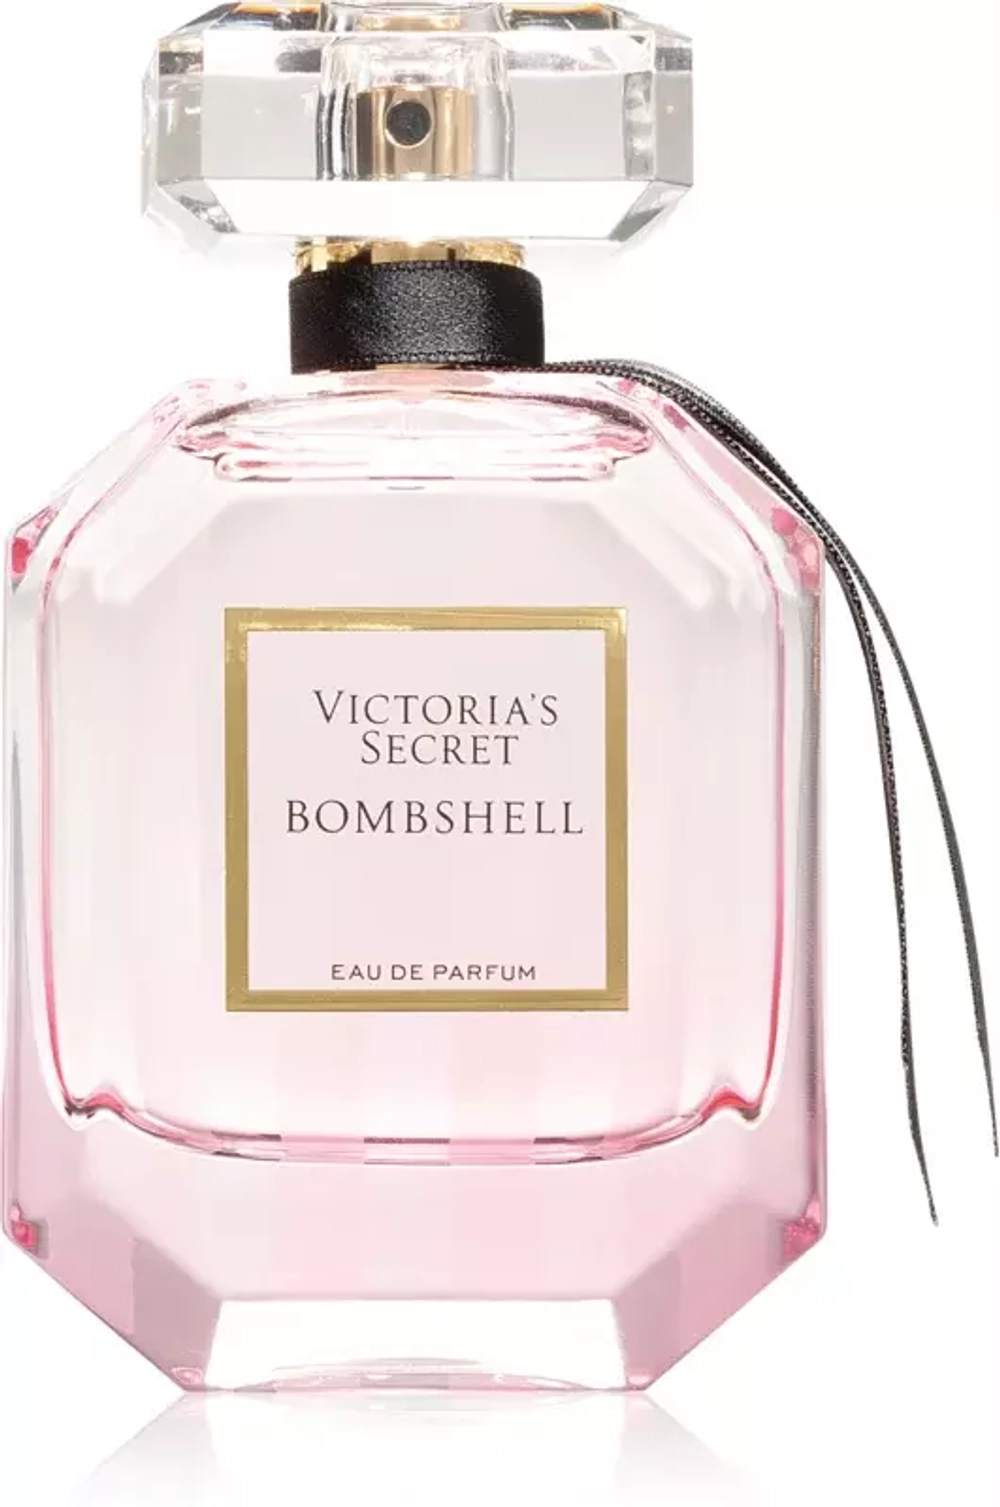 VICTORIAS SECRET
Bombshell Eau De Parfum new